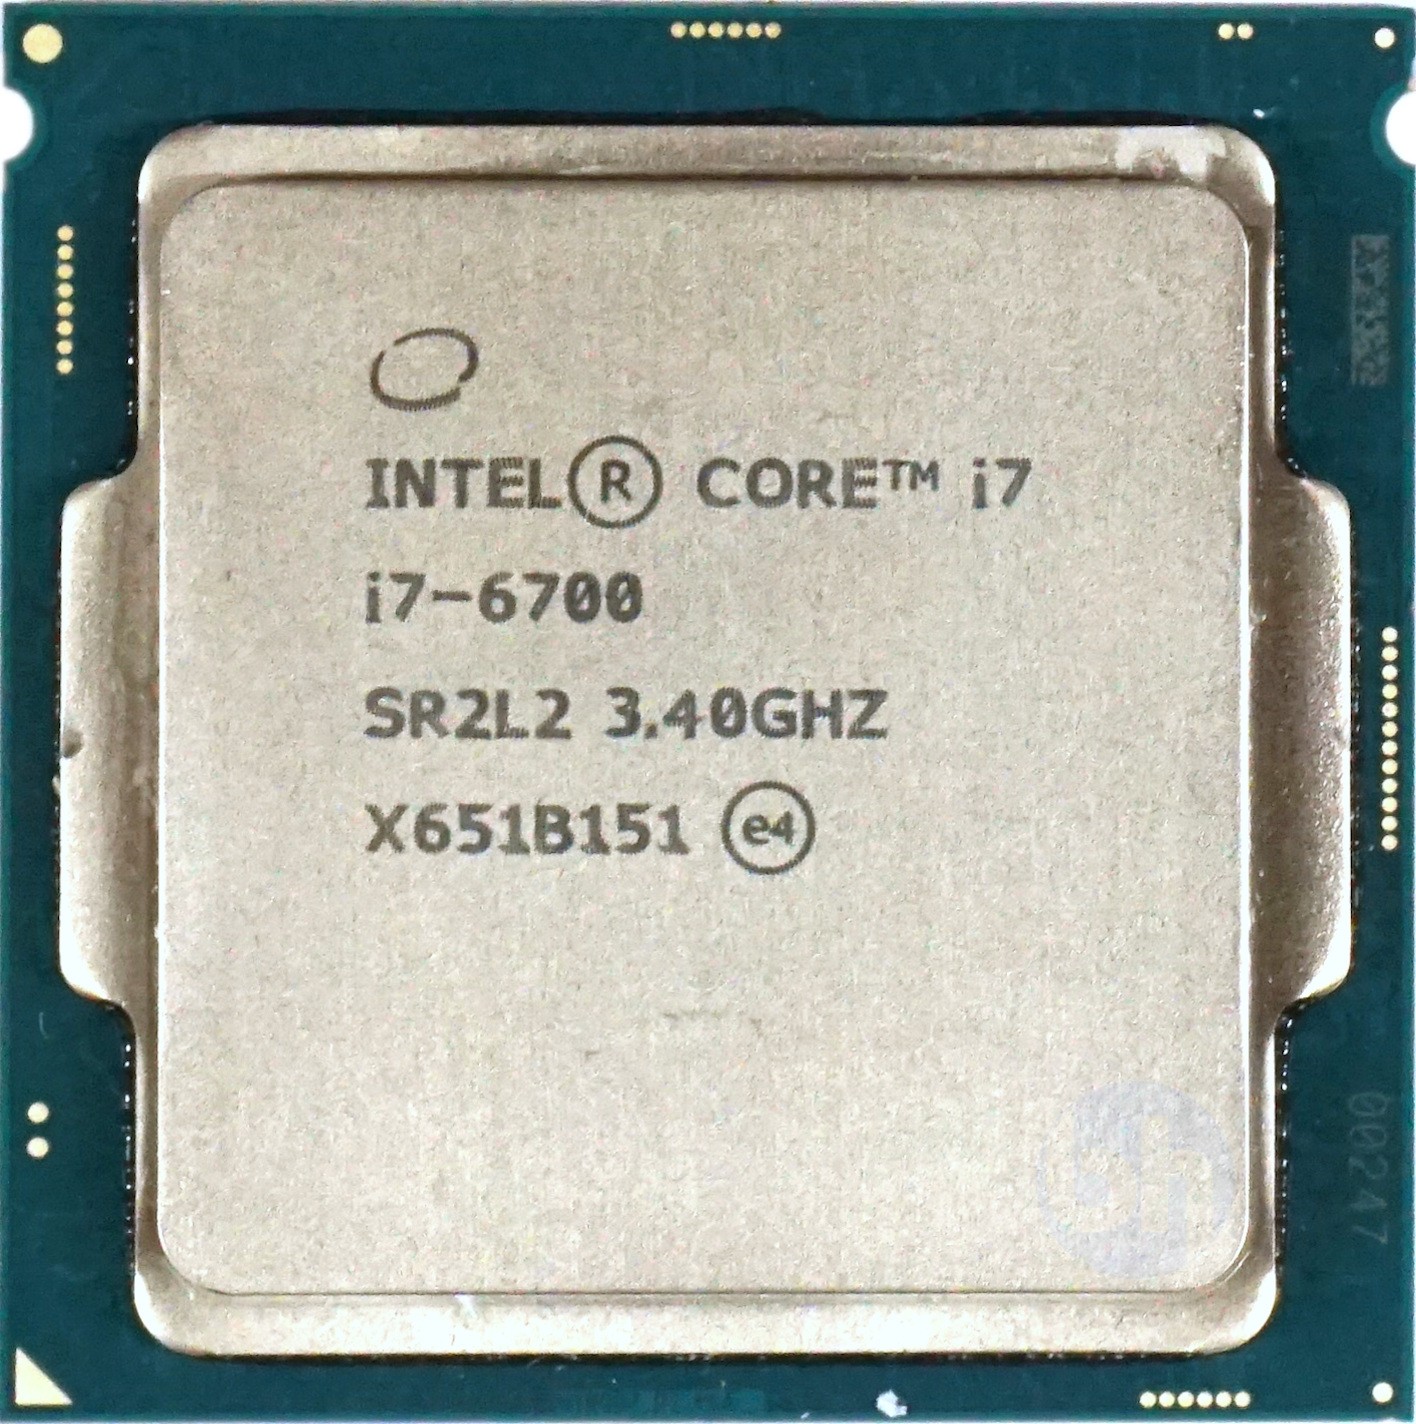 HP 8200 Elite SFF PC, Intel Quad-Core i7-2600 3.4GHz Processor